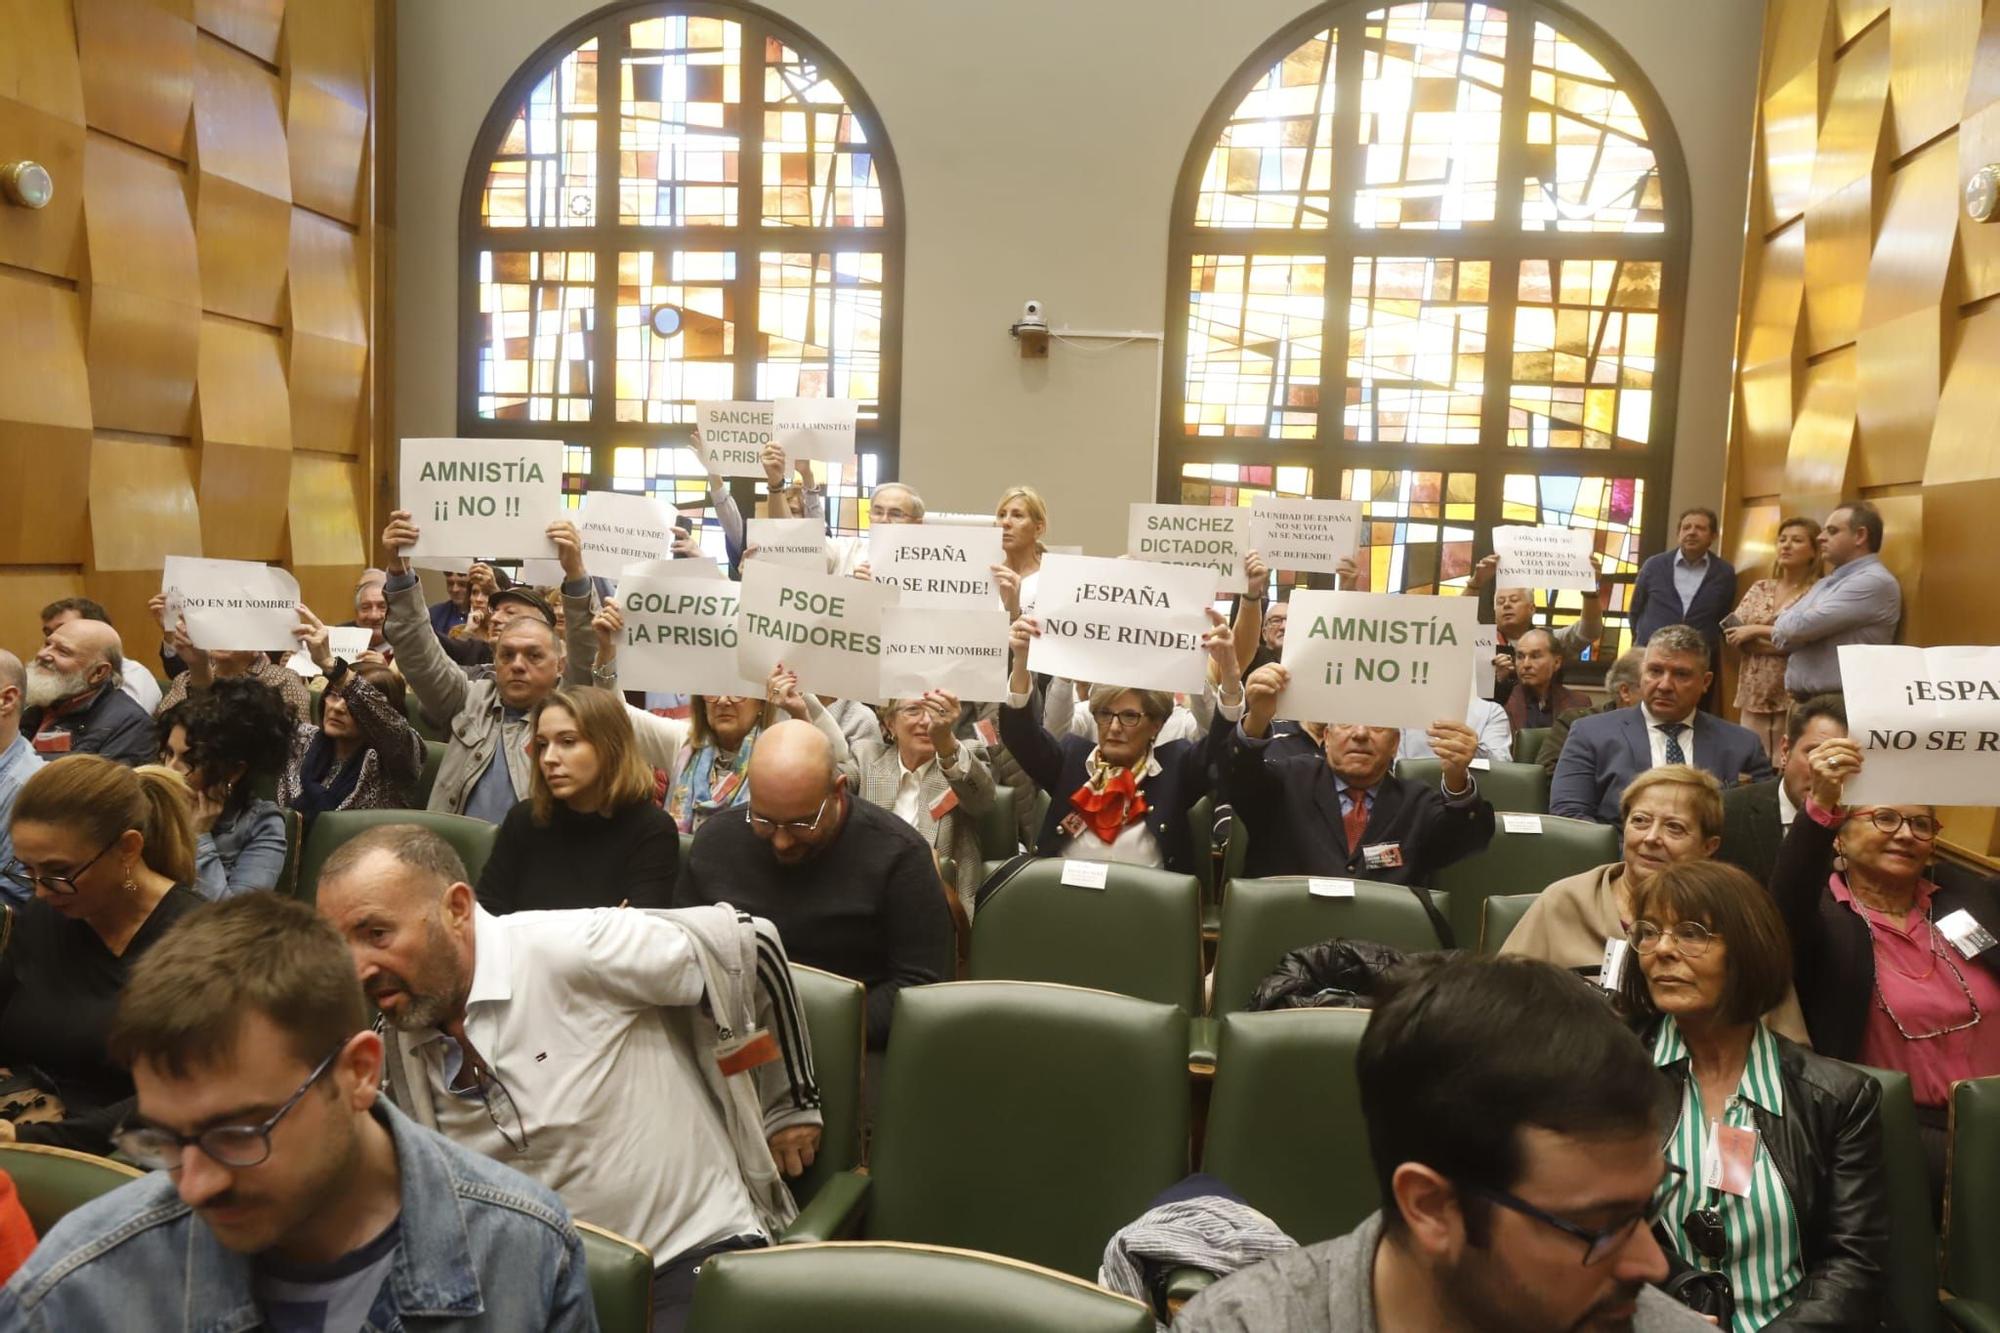 Pleno en el Ayuntamiento de Zaragoza con protesta contra la Ley de Amnistía y Pedro Sánchez